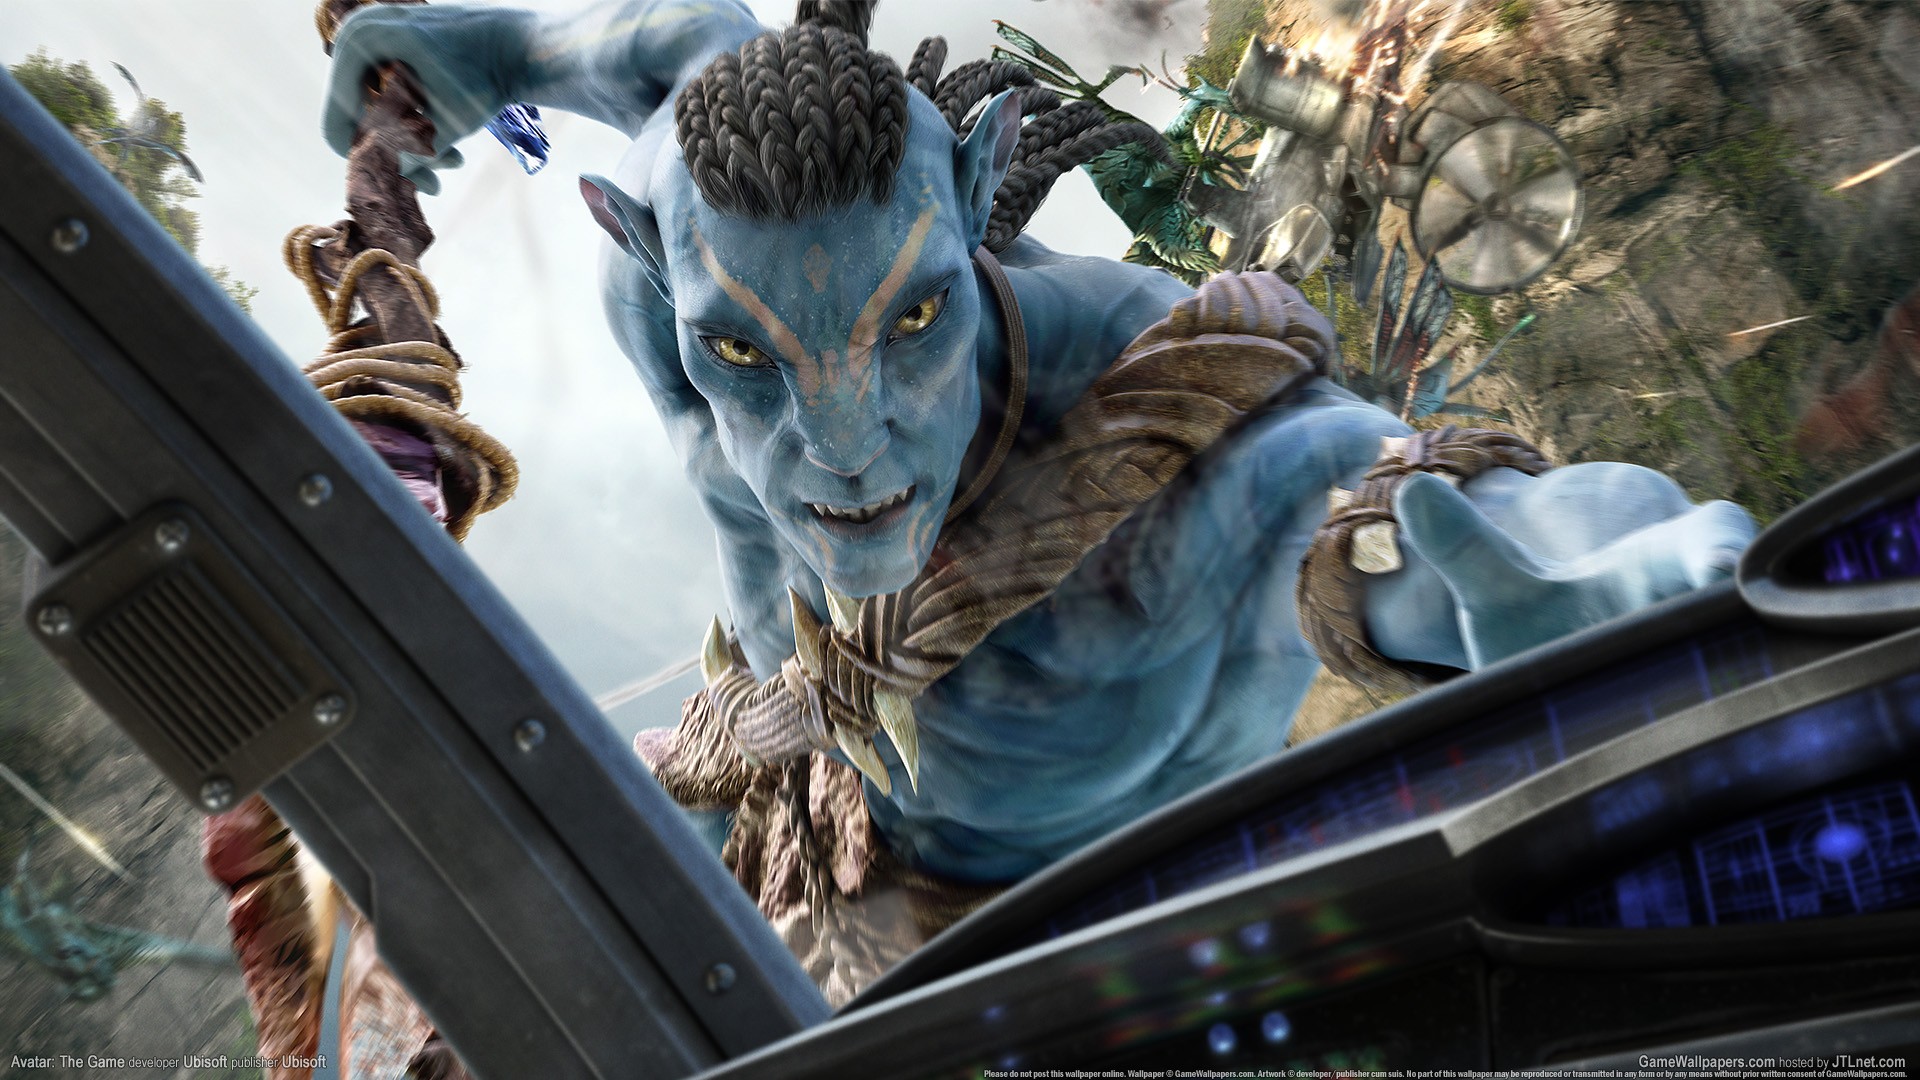 James Camerons Avatar for Mac OSX  Paulthetallcom